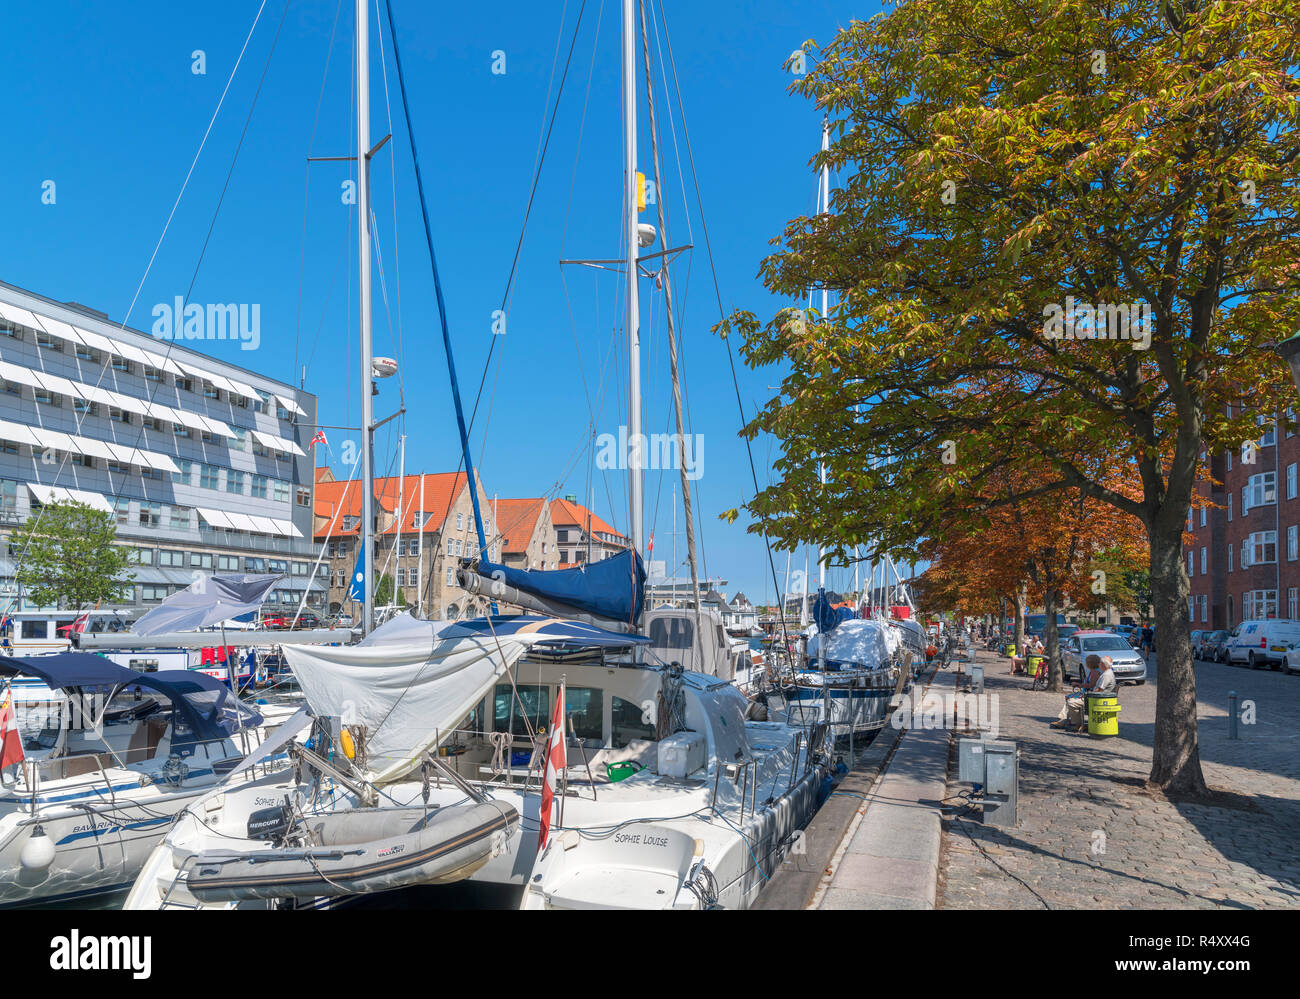 Yachts moored in a canal, Overgaden Oven Vandet, Christianshavn, Copenhagen, Zealand, Denmark Stock Photo